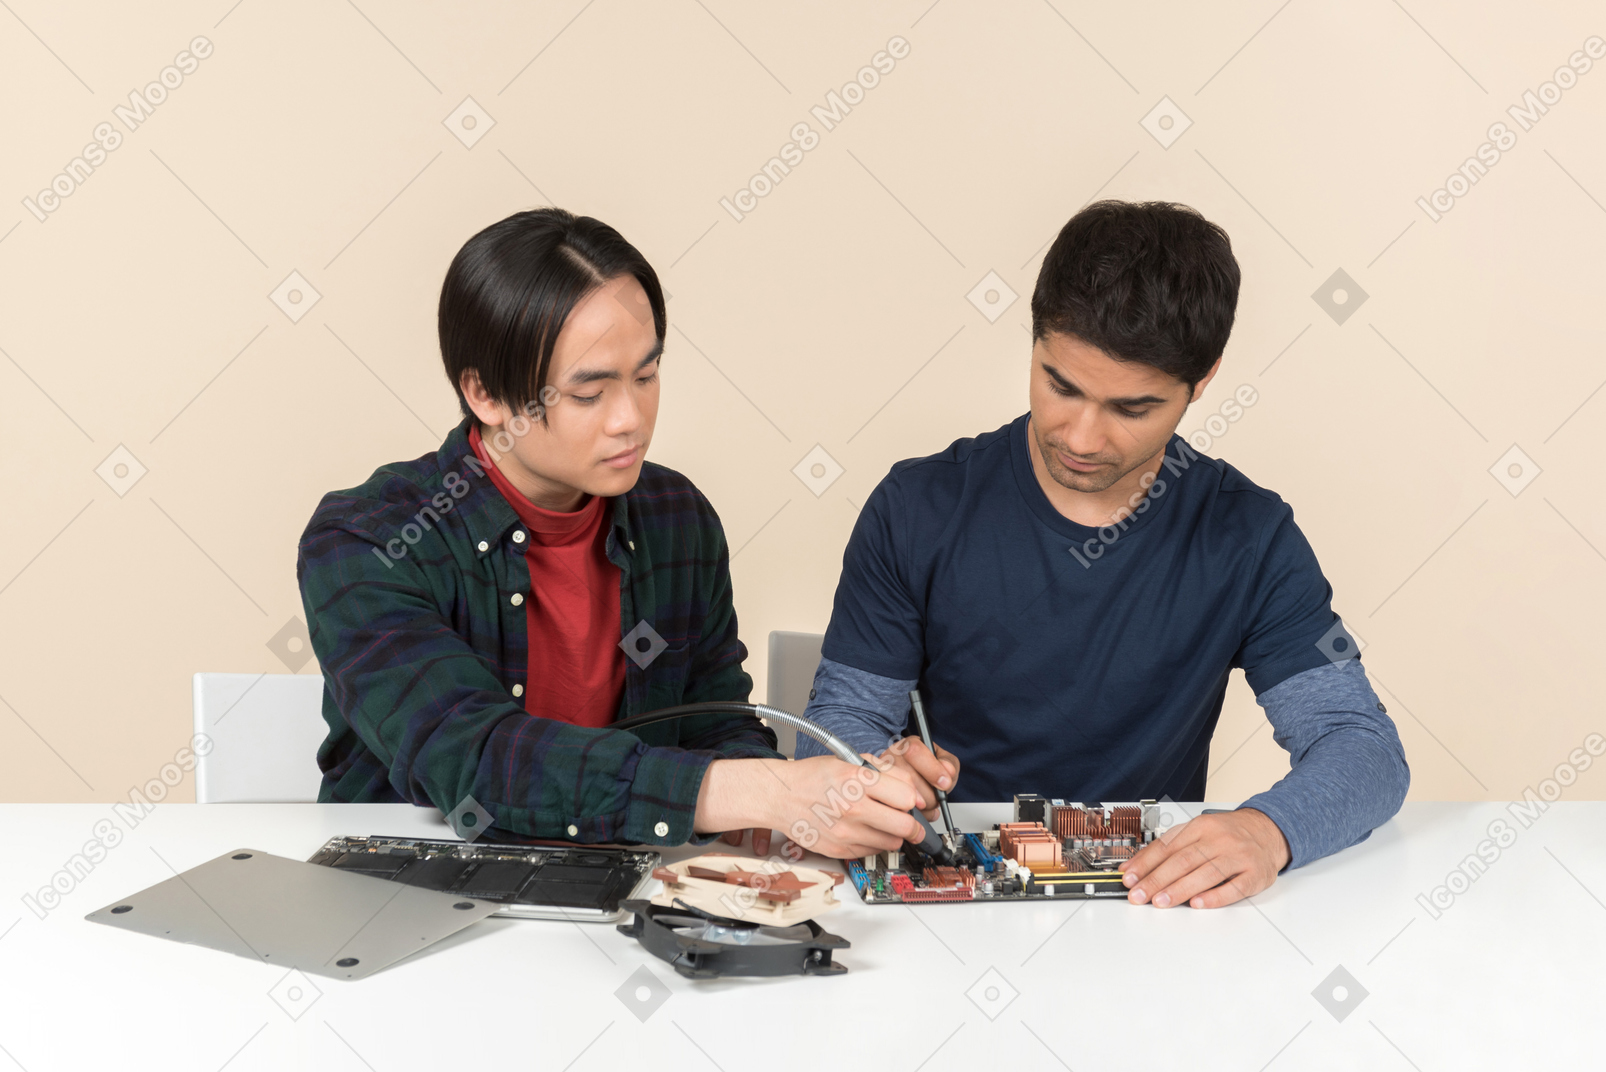 Zwei junge geeks mit einigen details auf dem tisch, die einige probleme haben